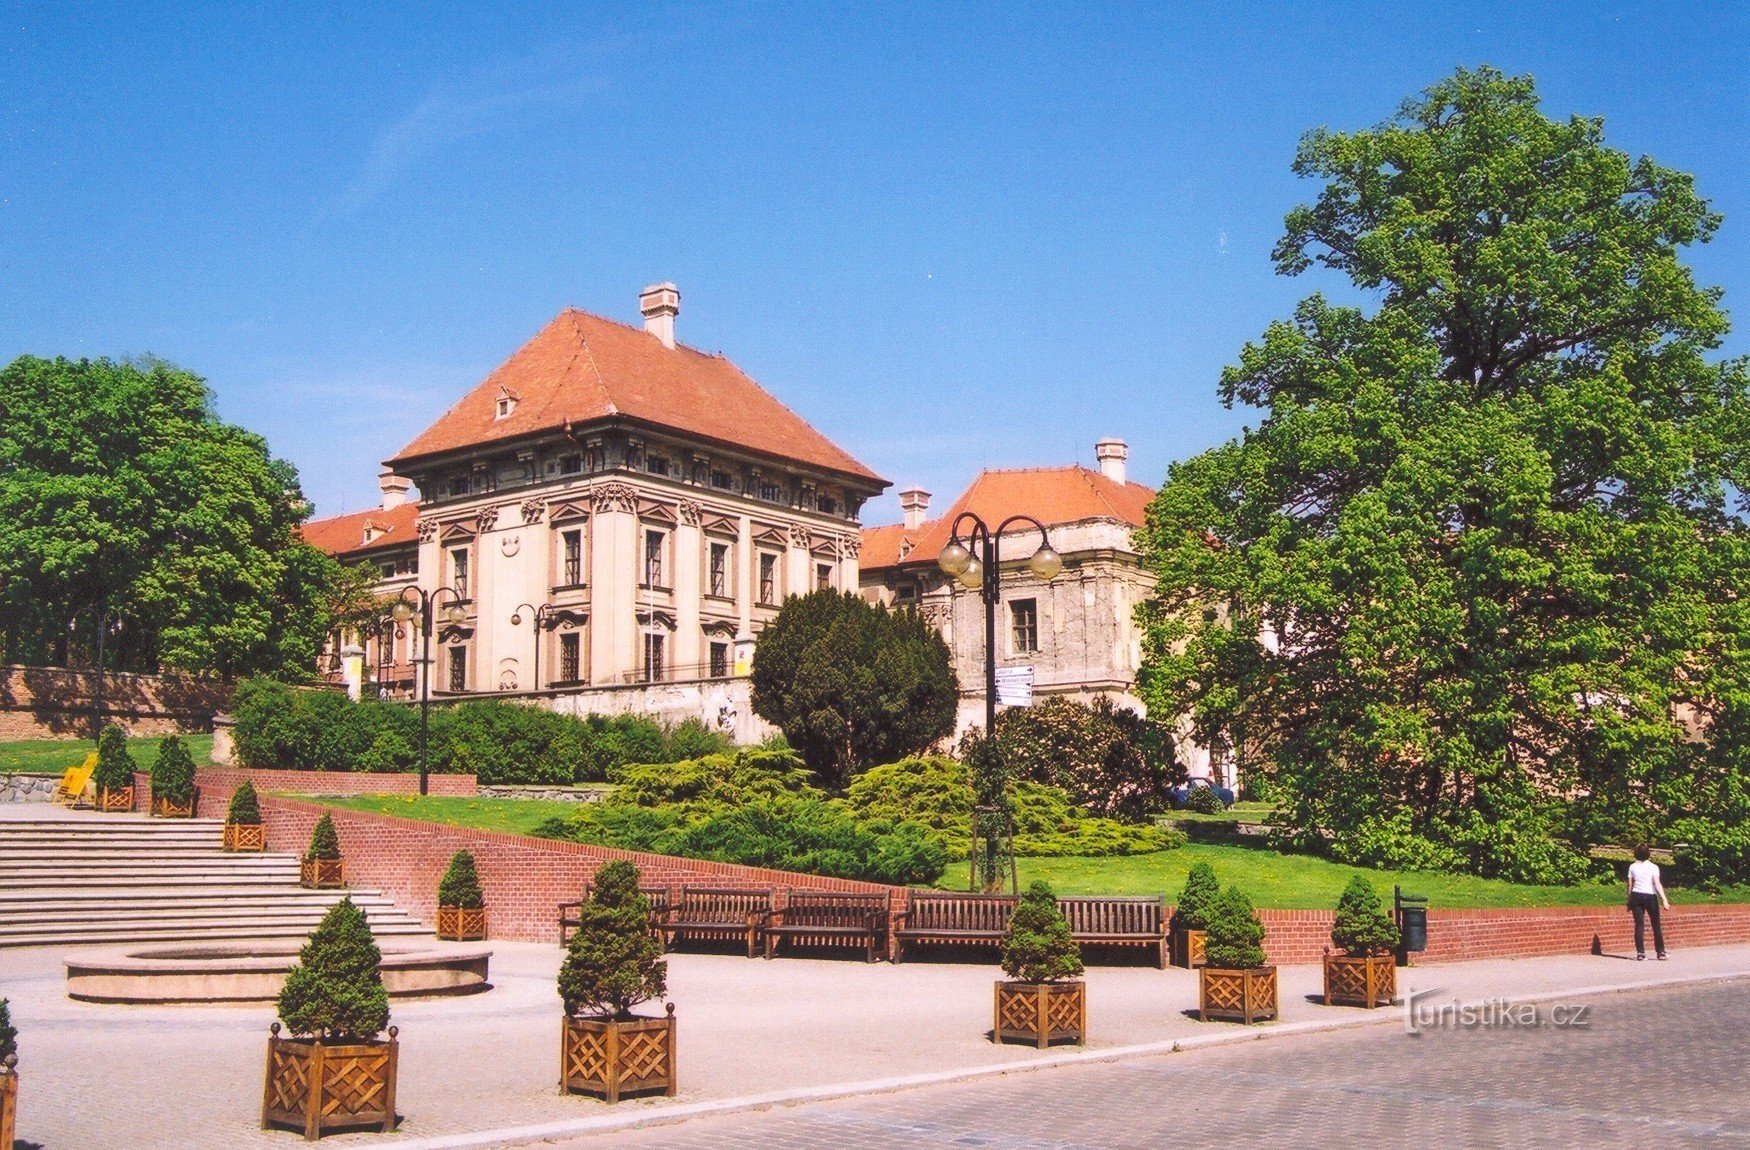 Slavkov u Brno - castelo, parte de entrada